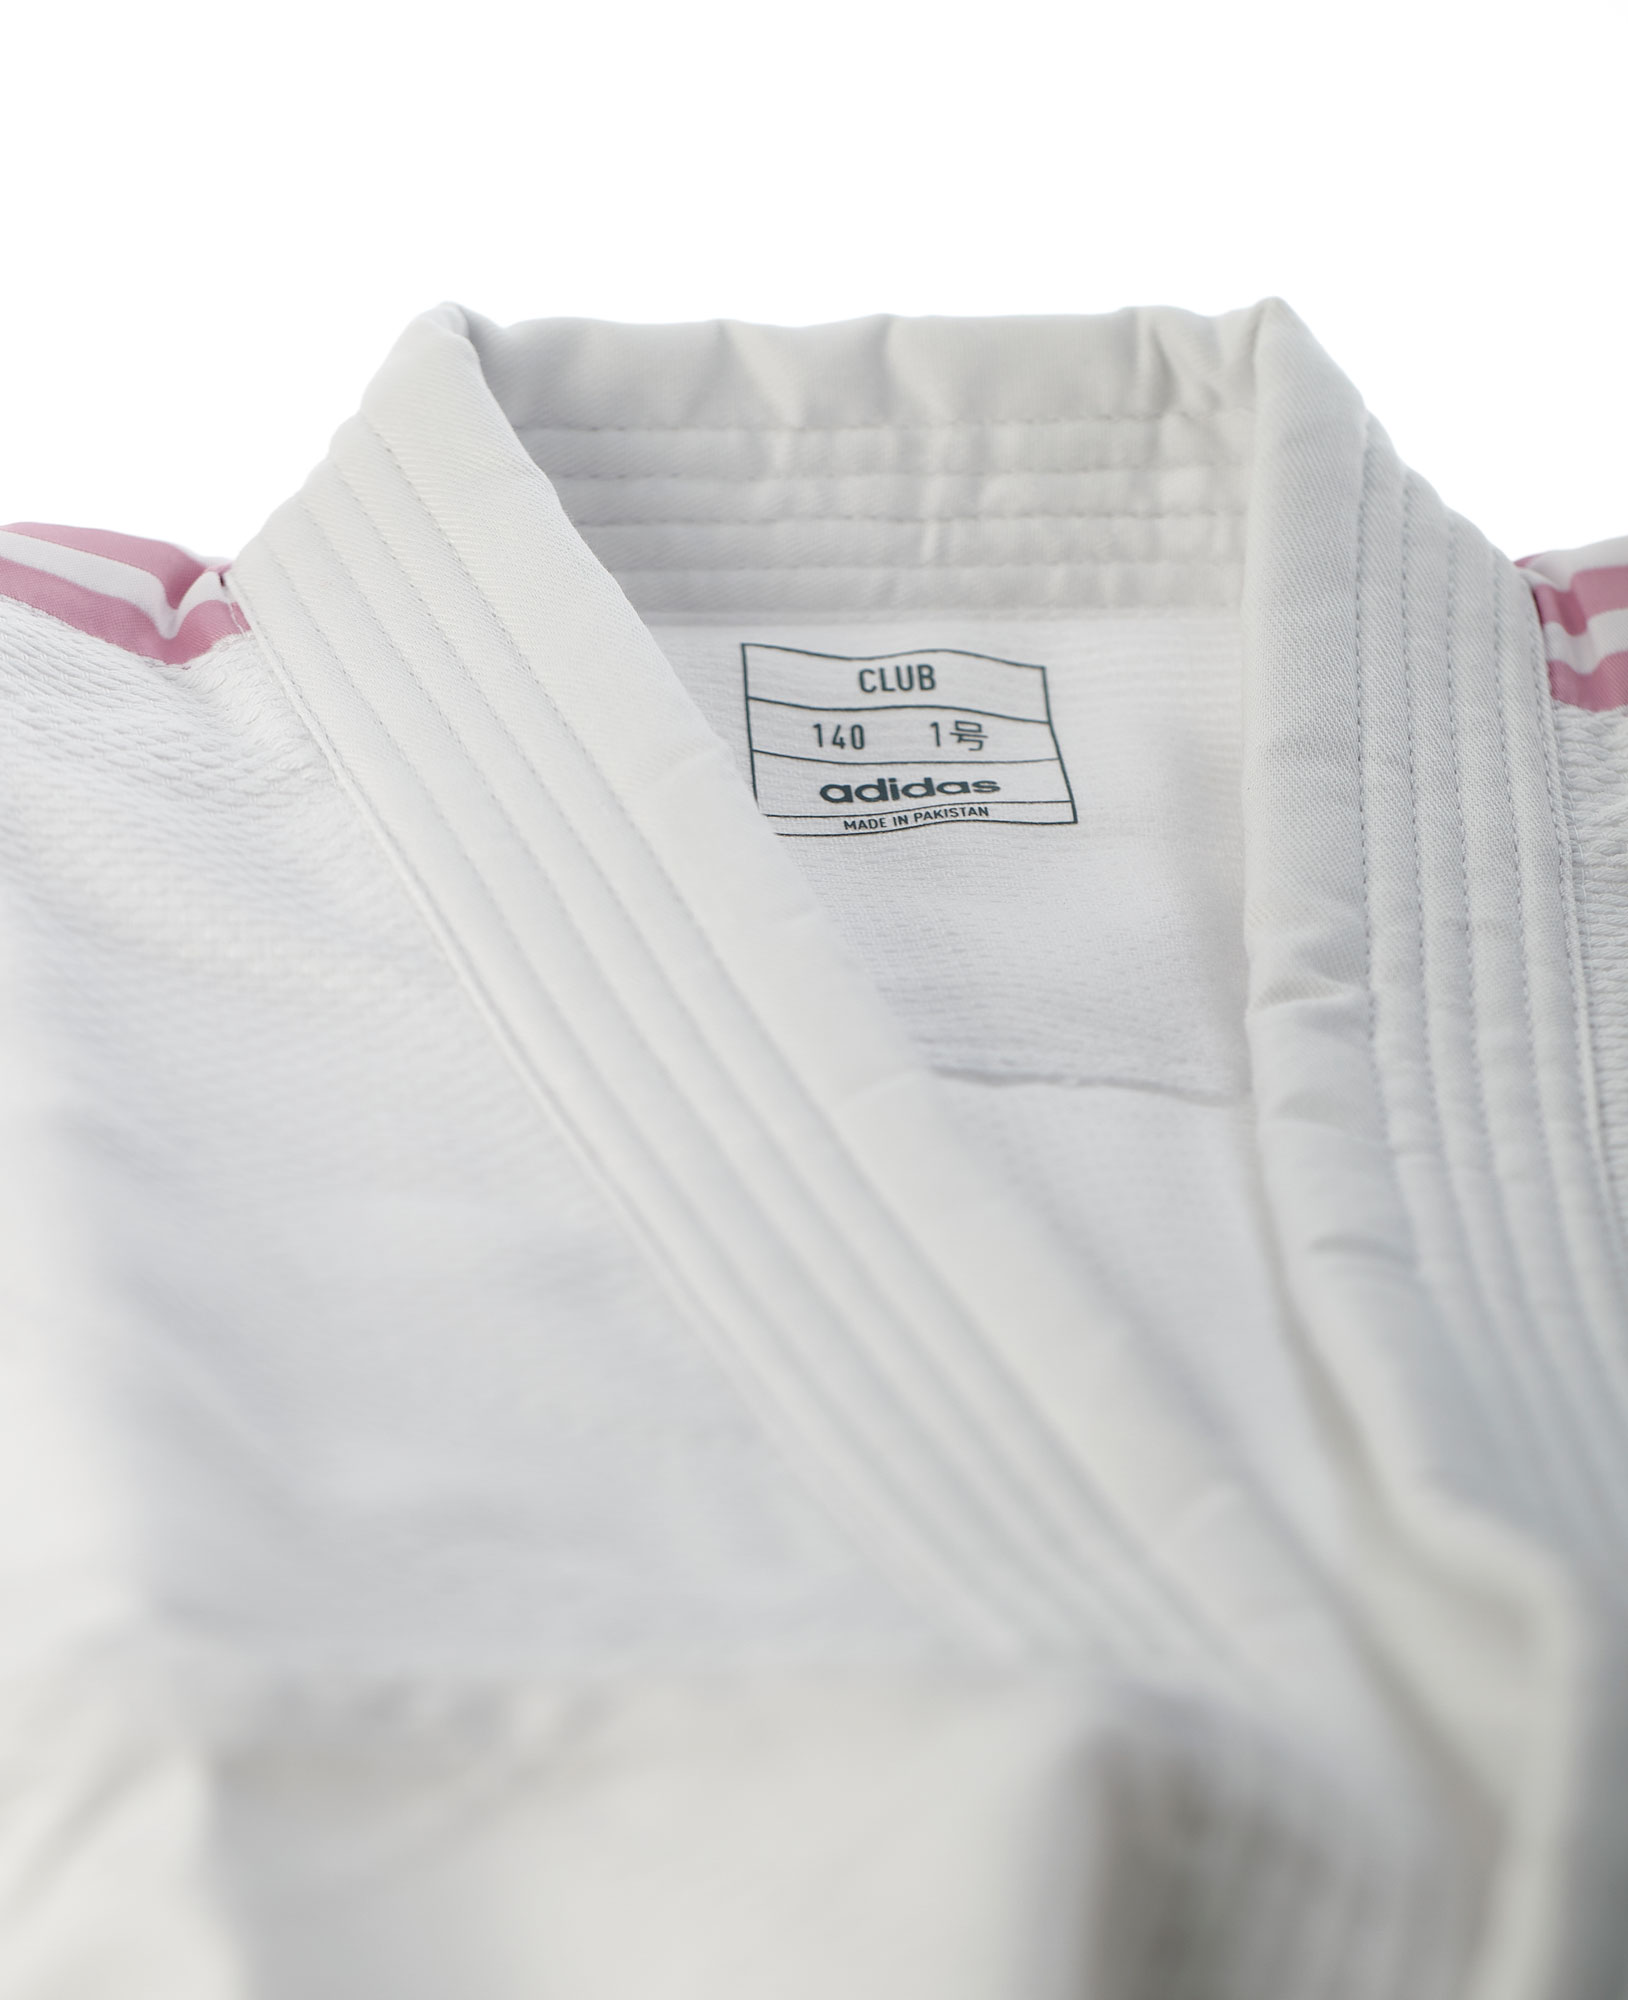 adidas judo gi Club J350 white/pink stripes